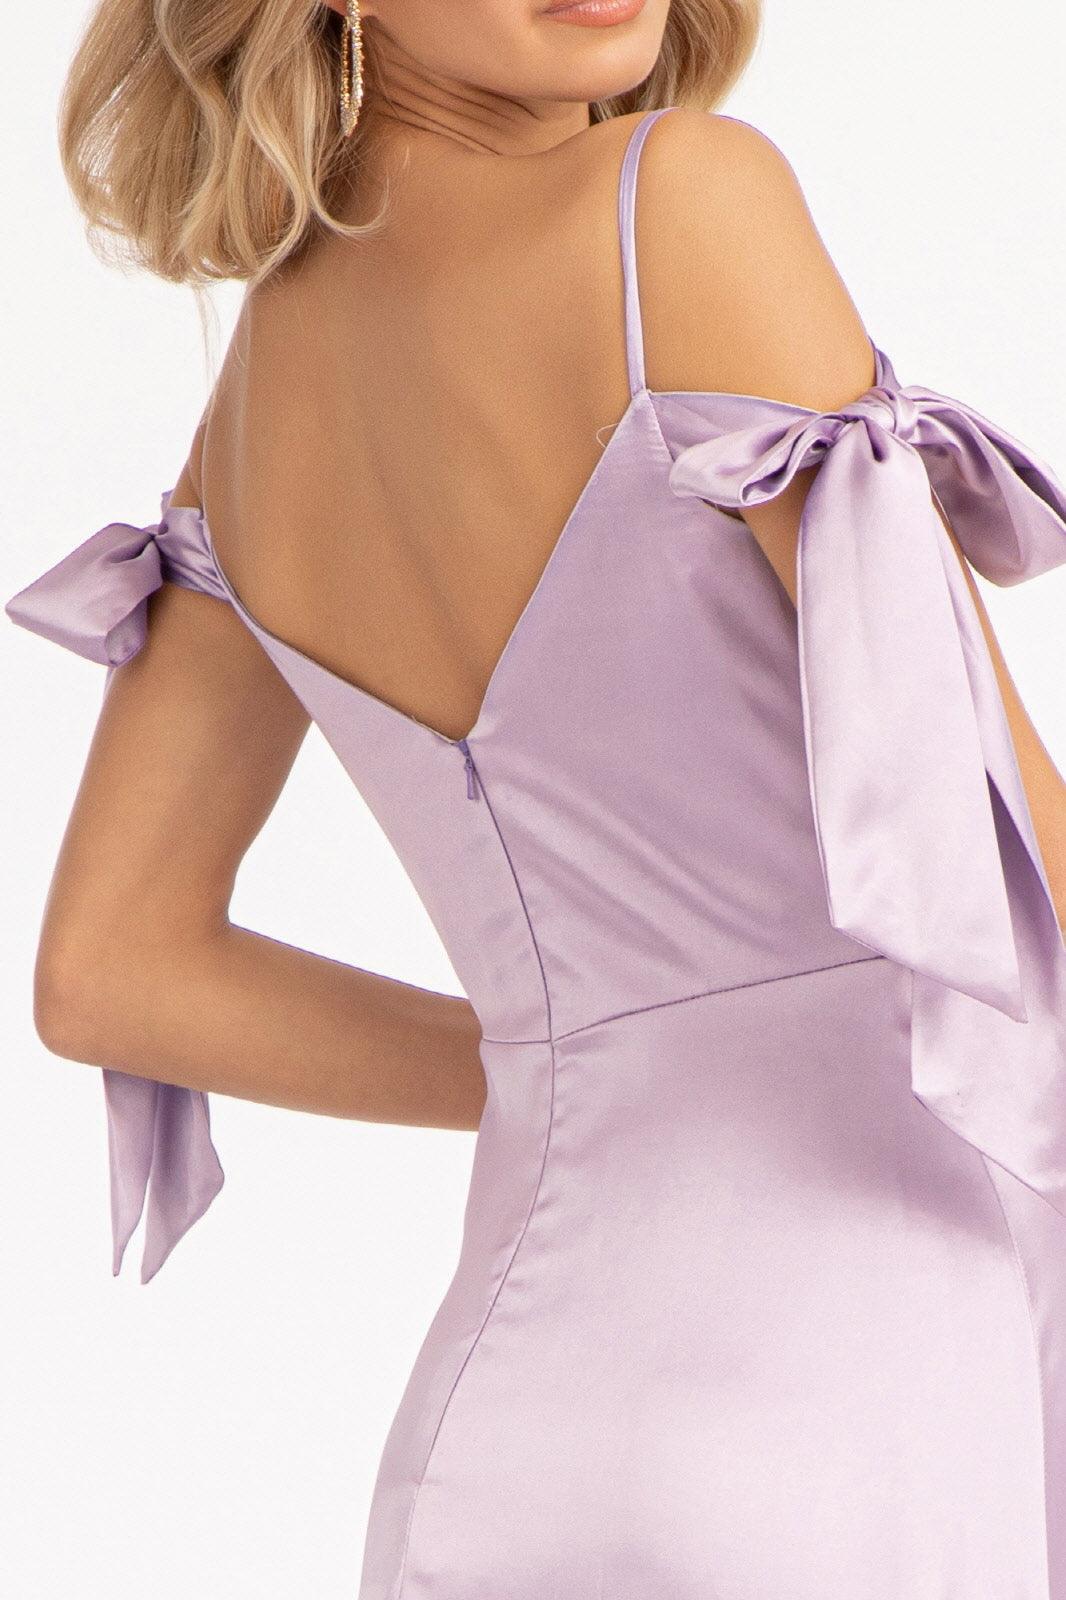 Long Off Shoulder Formal Bridesmaid Dress - The Dress Outlet